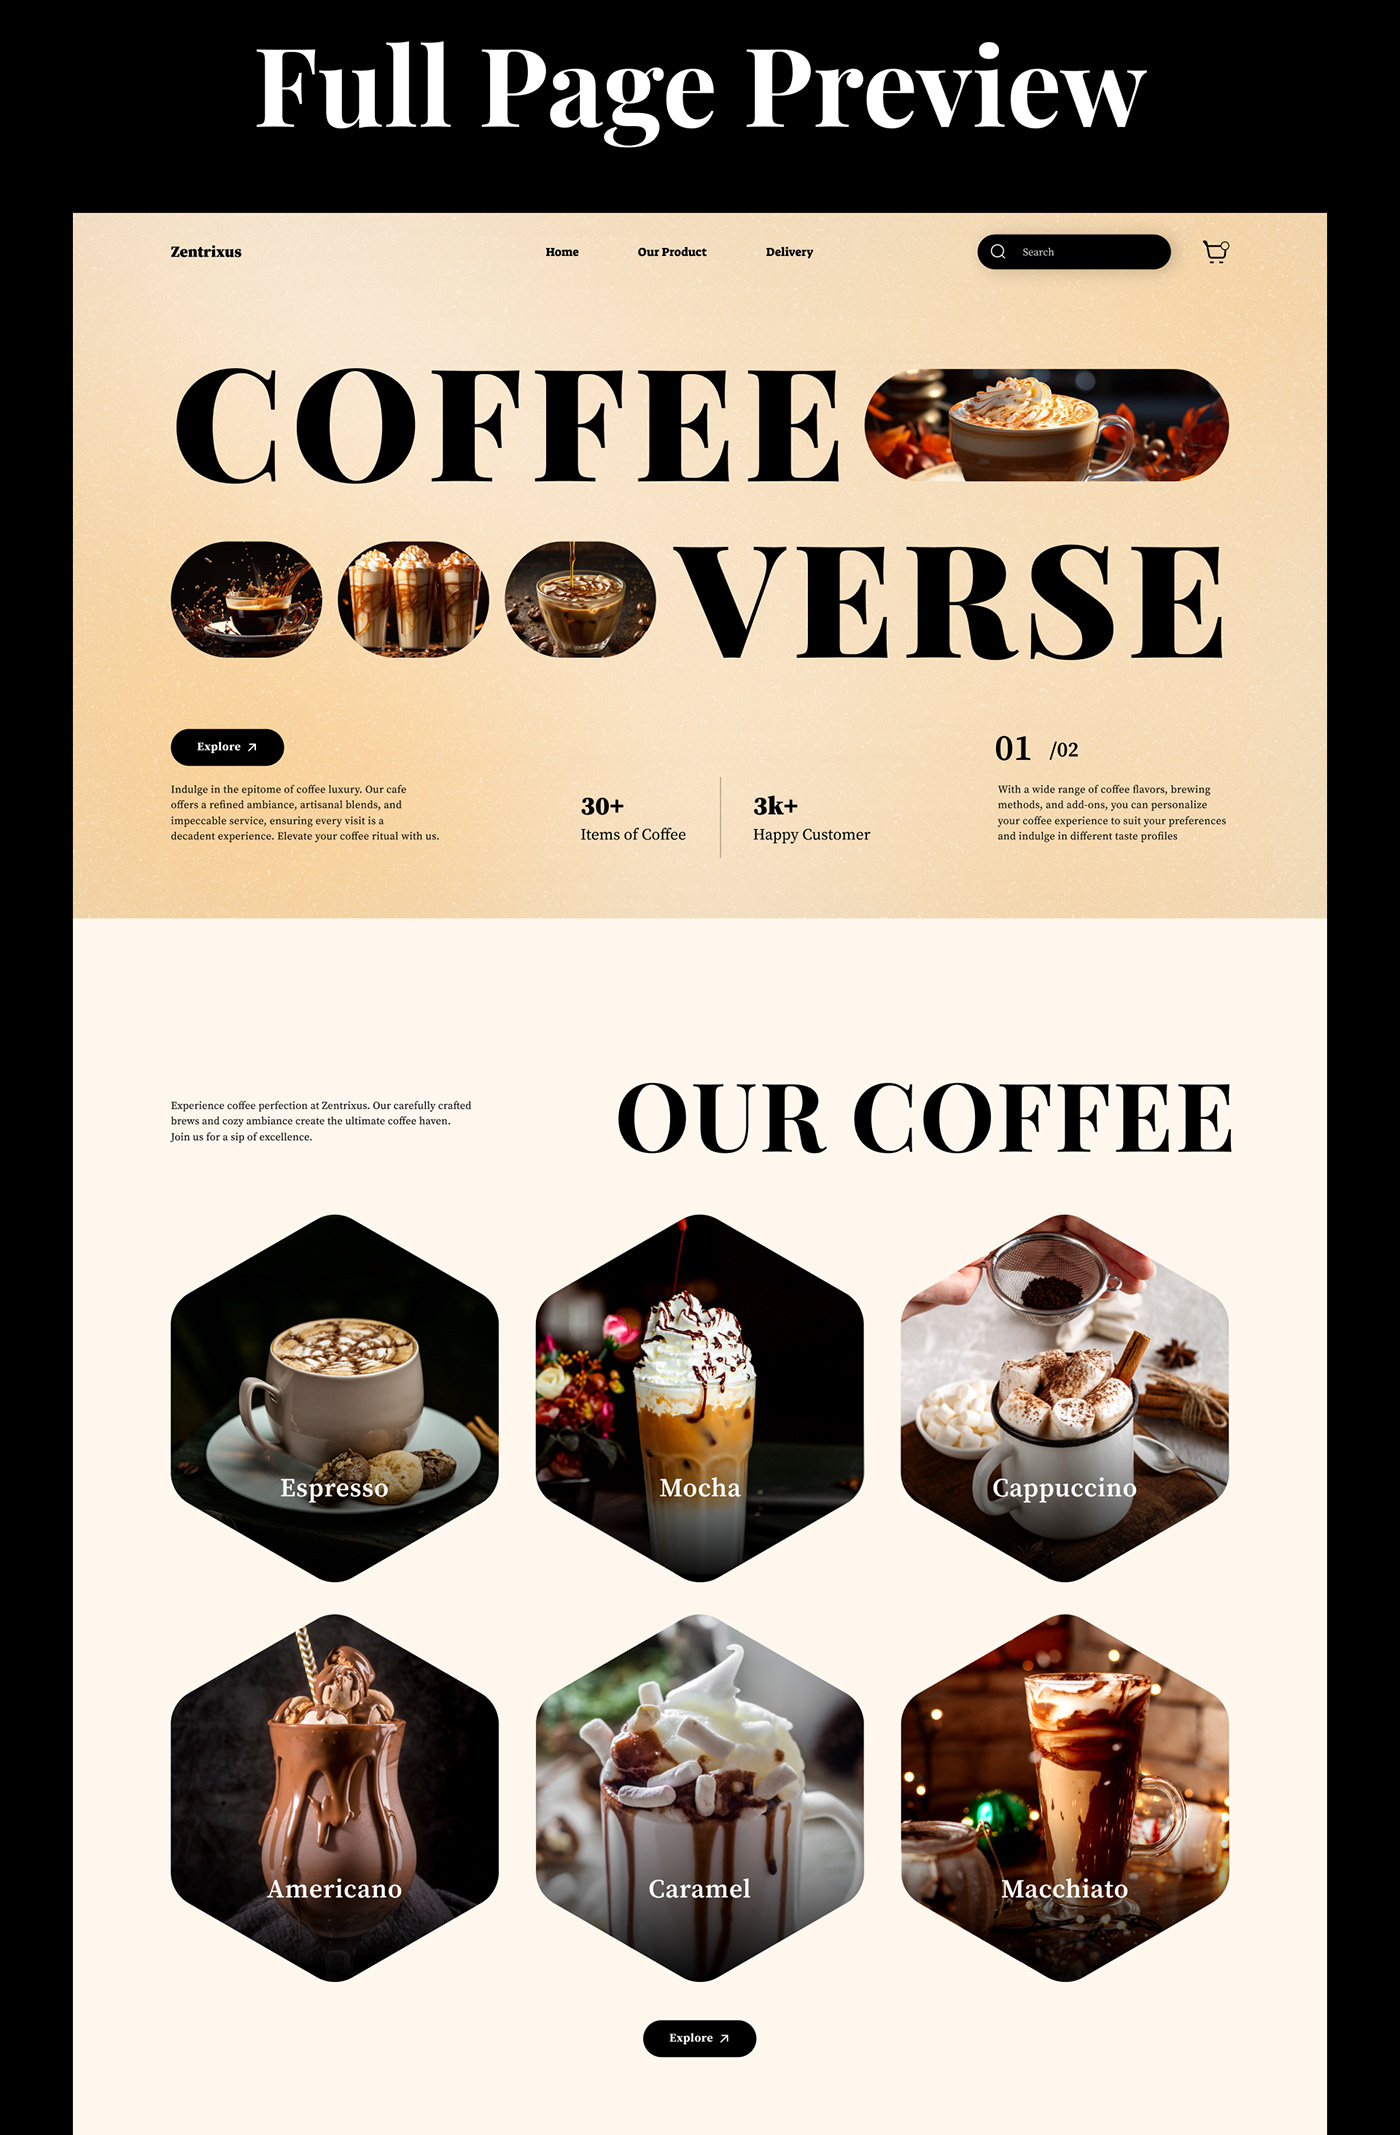 Zentrixus Coffee Website Landing Page